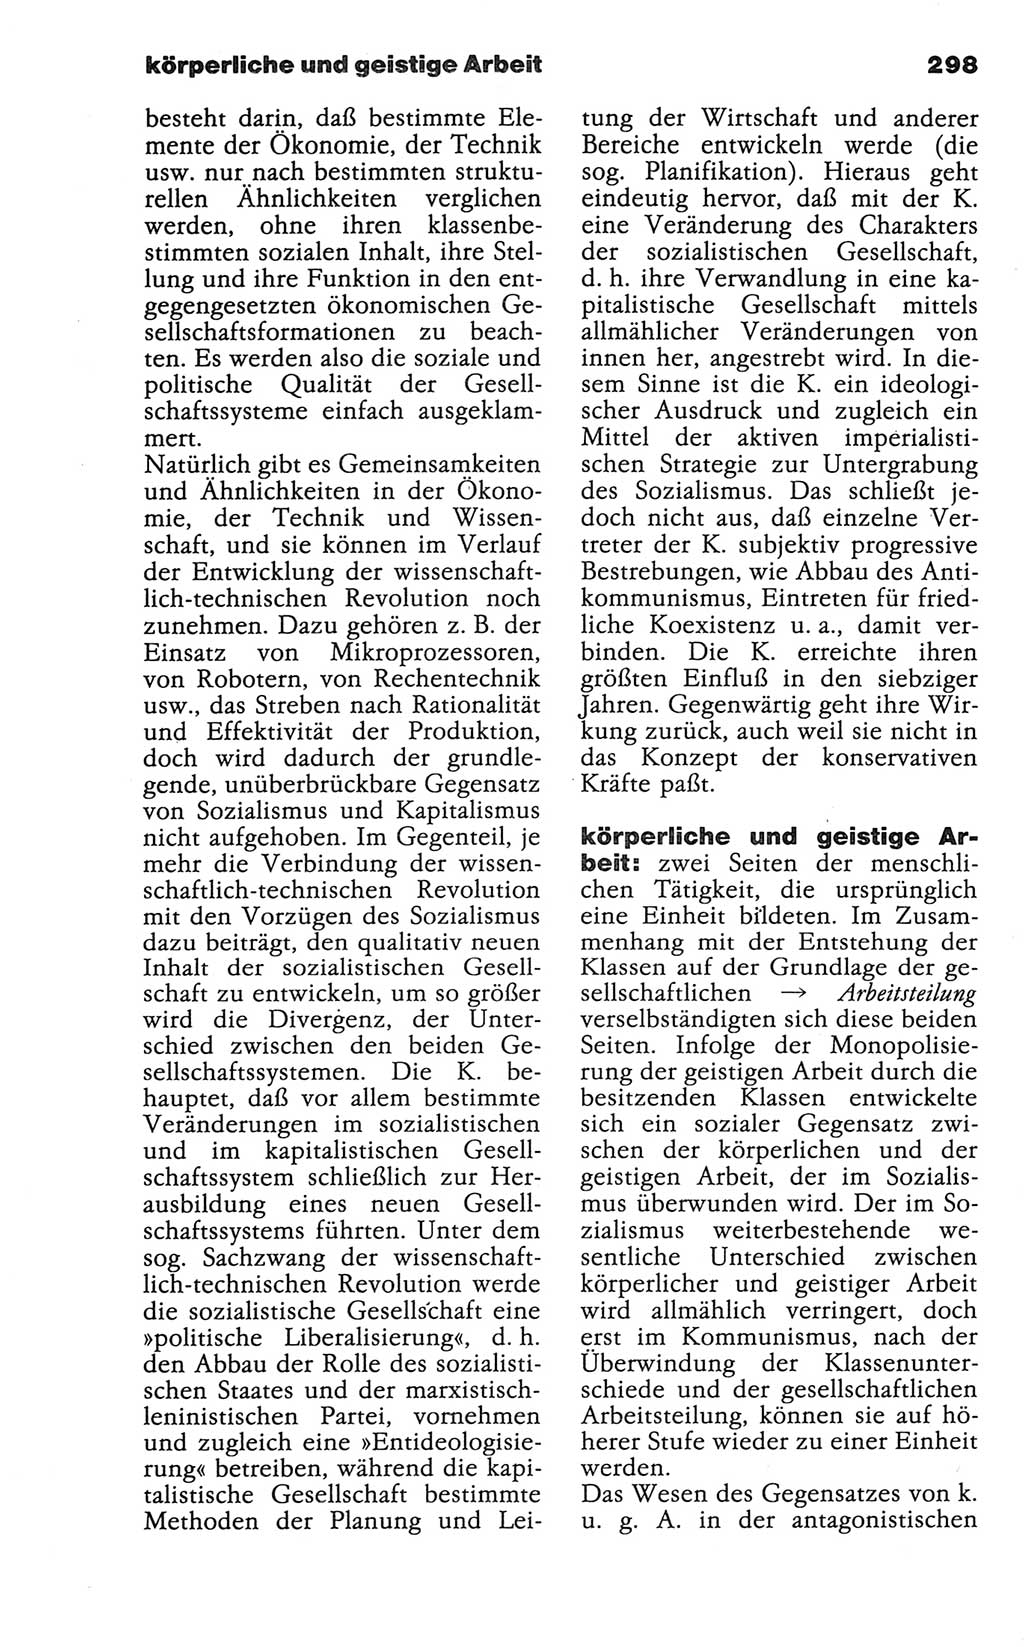 Wörterbuch der marxistisch-leninistischen Philosophie [Deutsche Demokratische Republik (DDR)] 1986, Seite 298 (Wb. ML Phil. DDR 1986, S. 298)